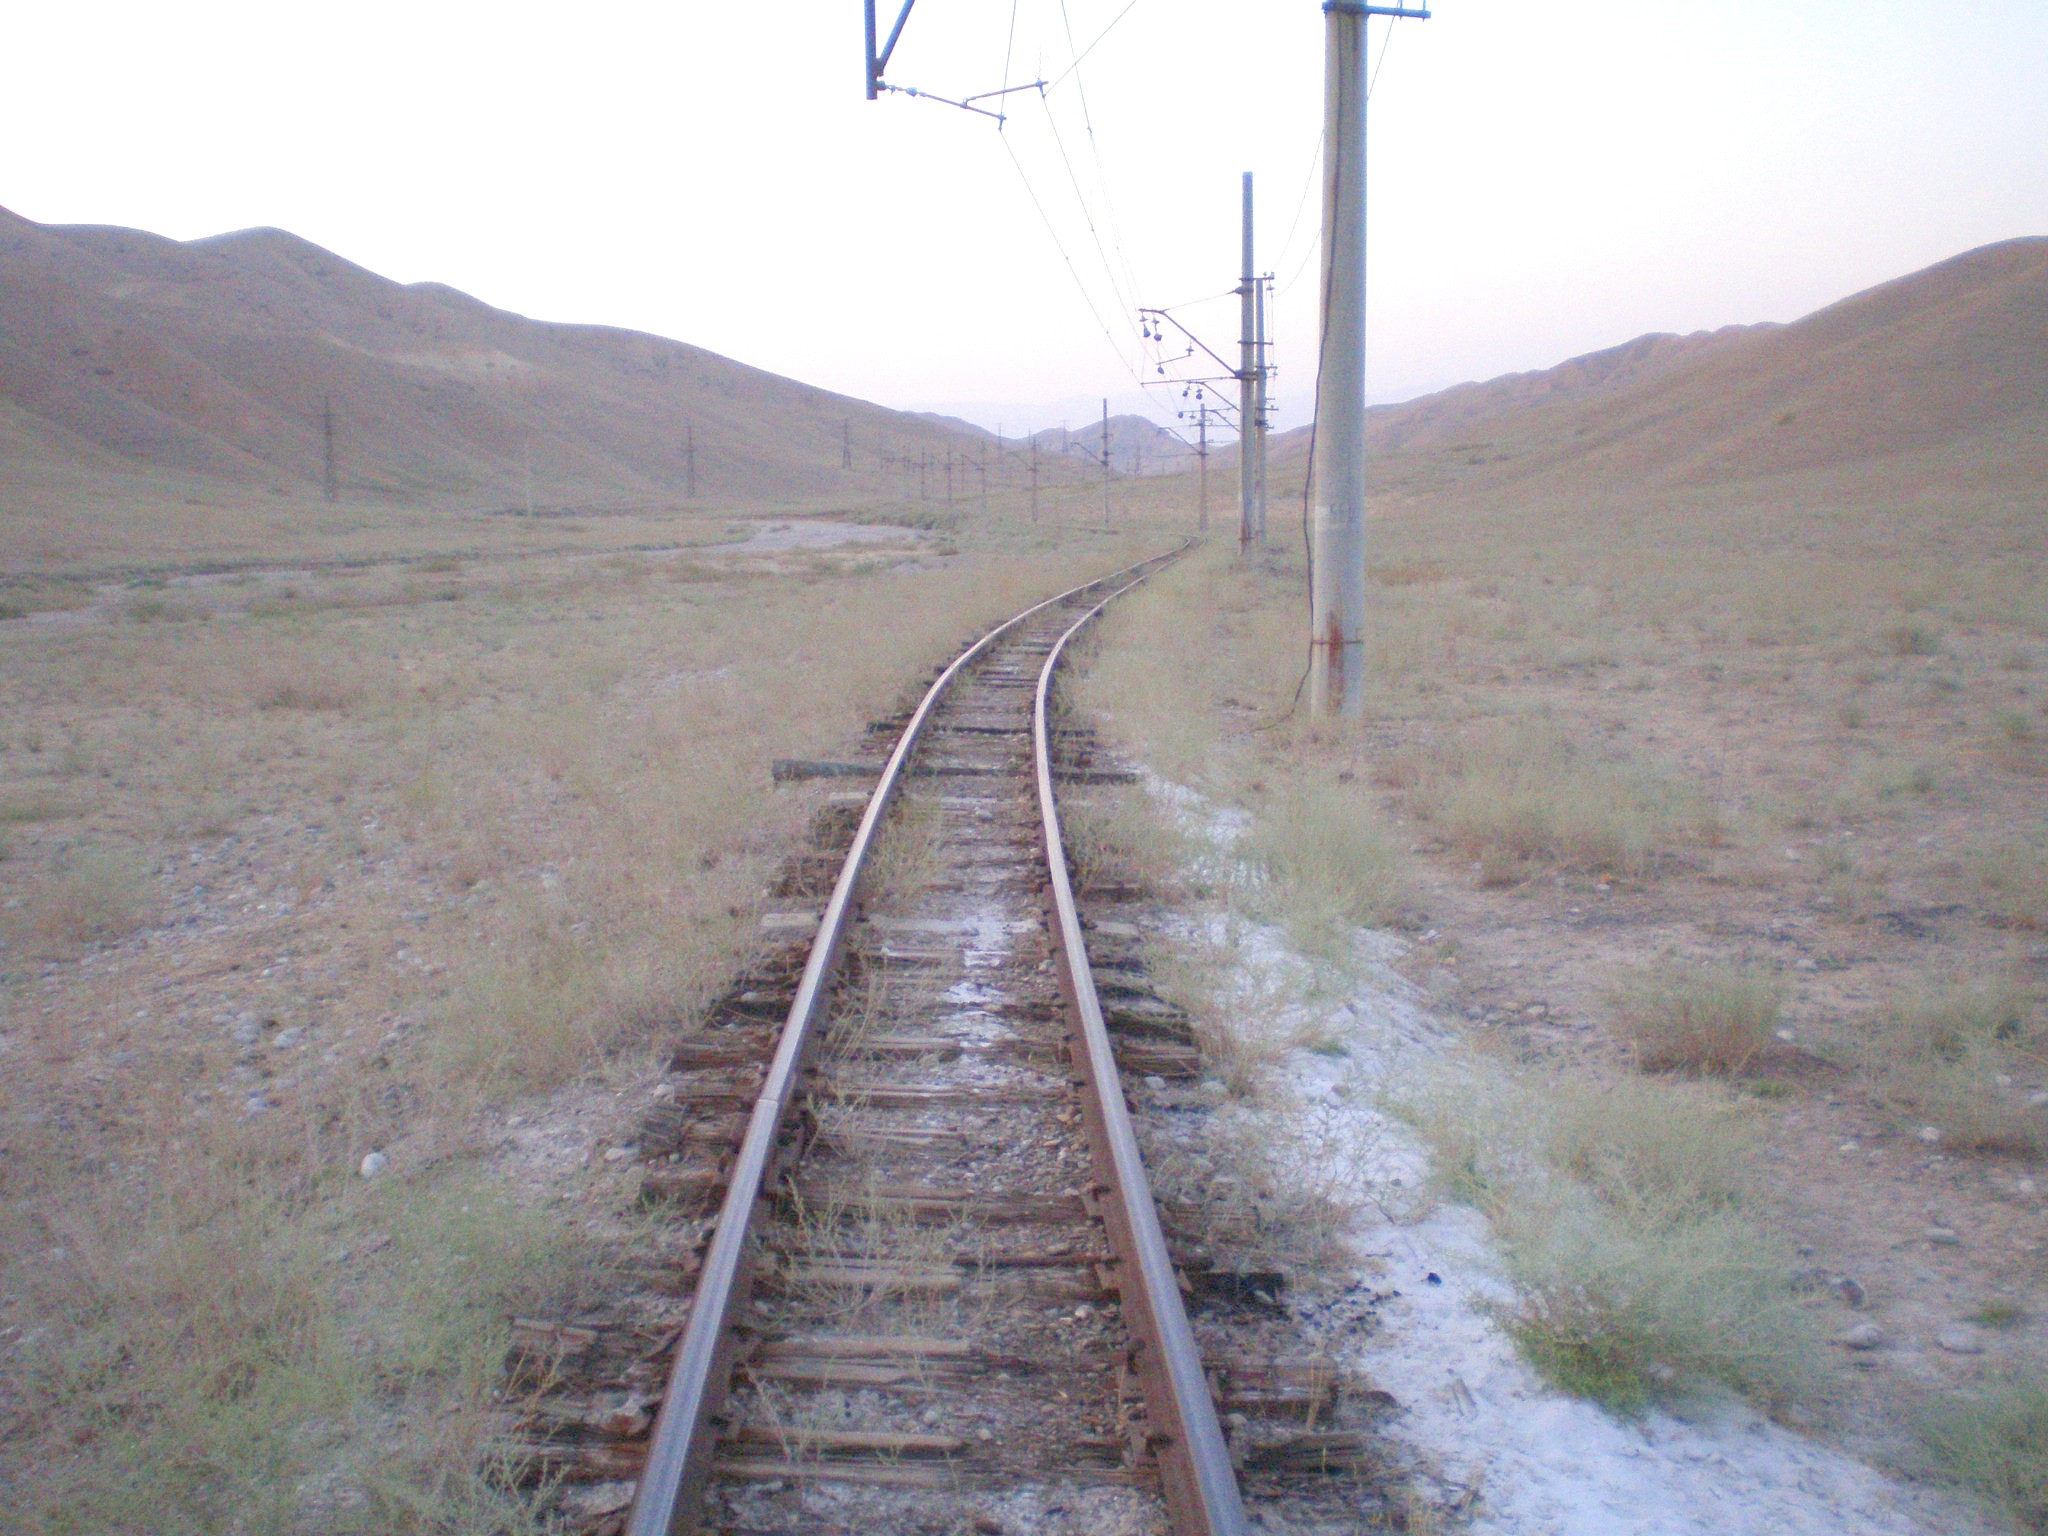 Сулюктинская узкоколейная железная дорога  —  фотографии, сделанные в 2008 году (часть 31)